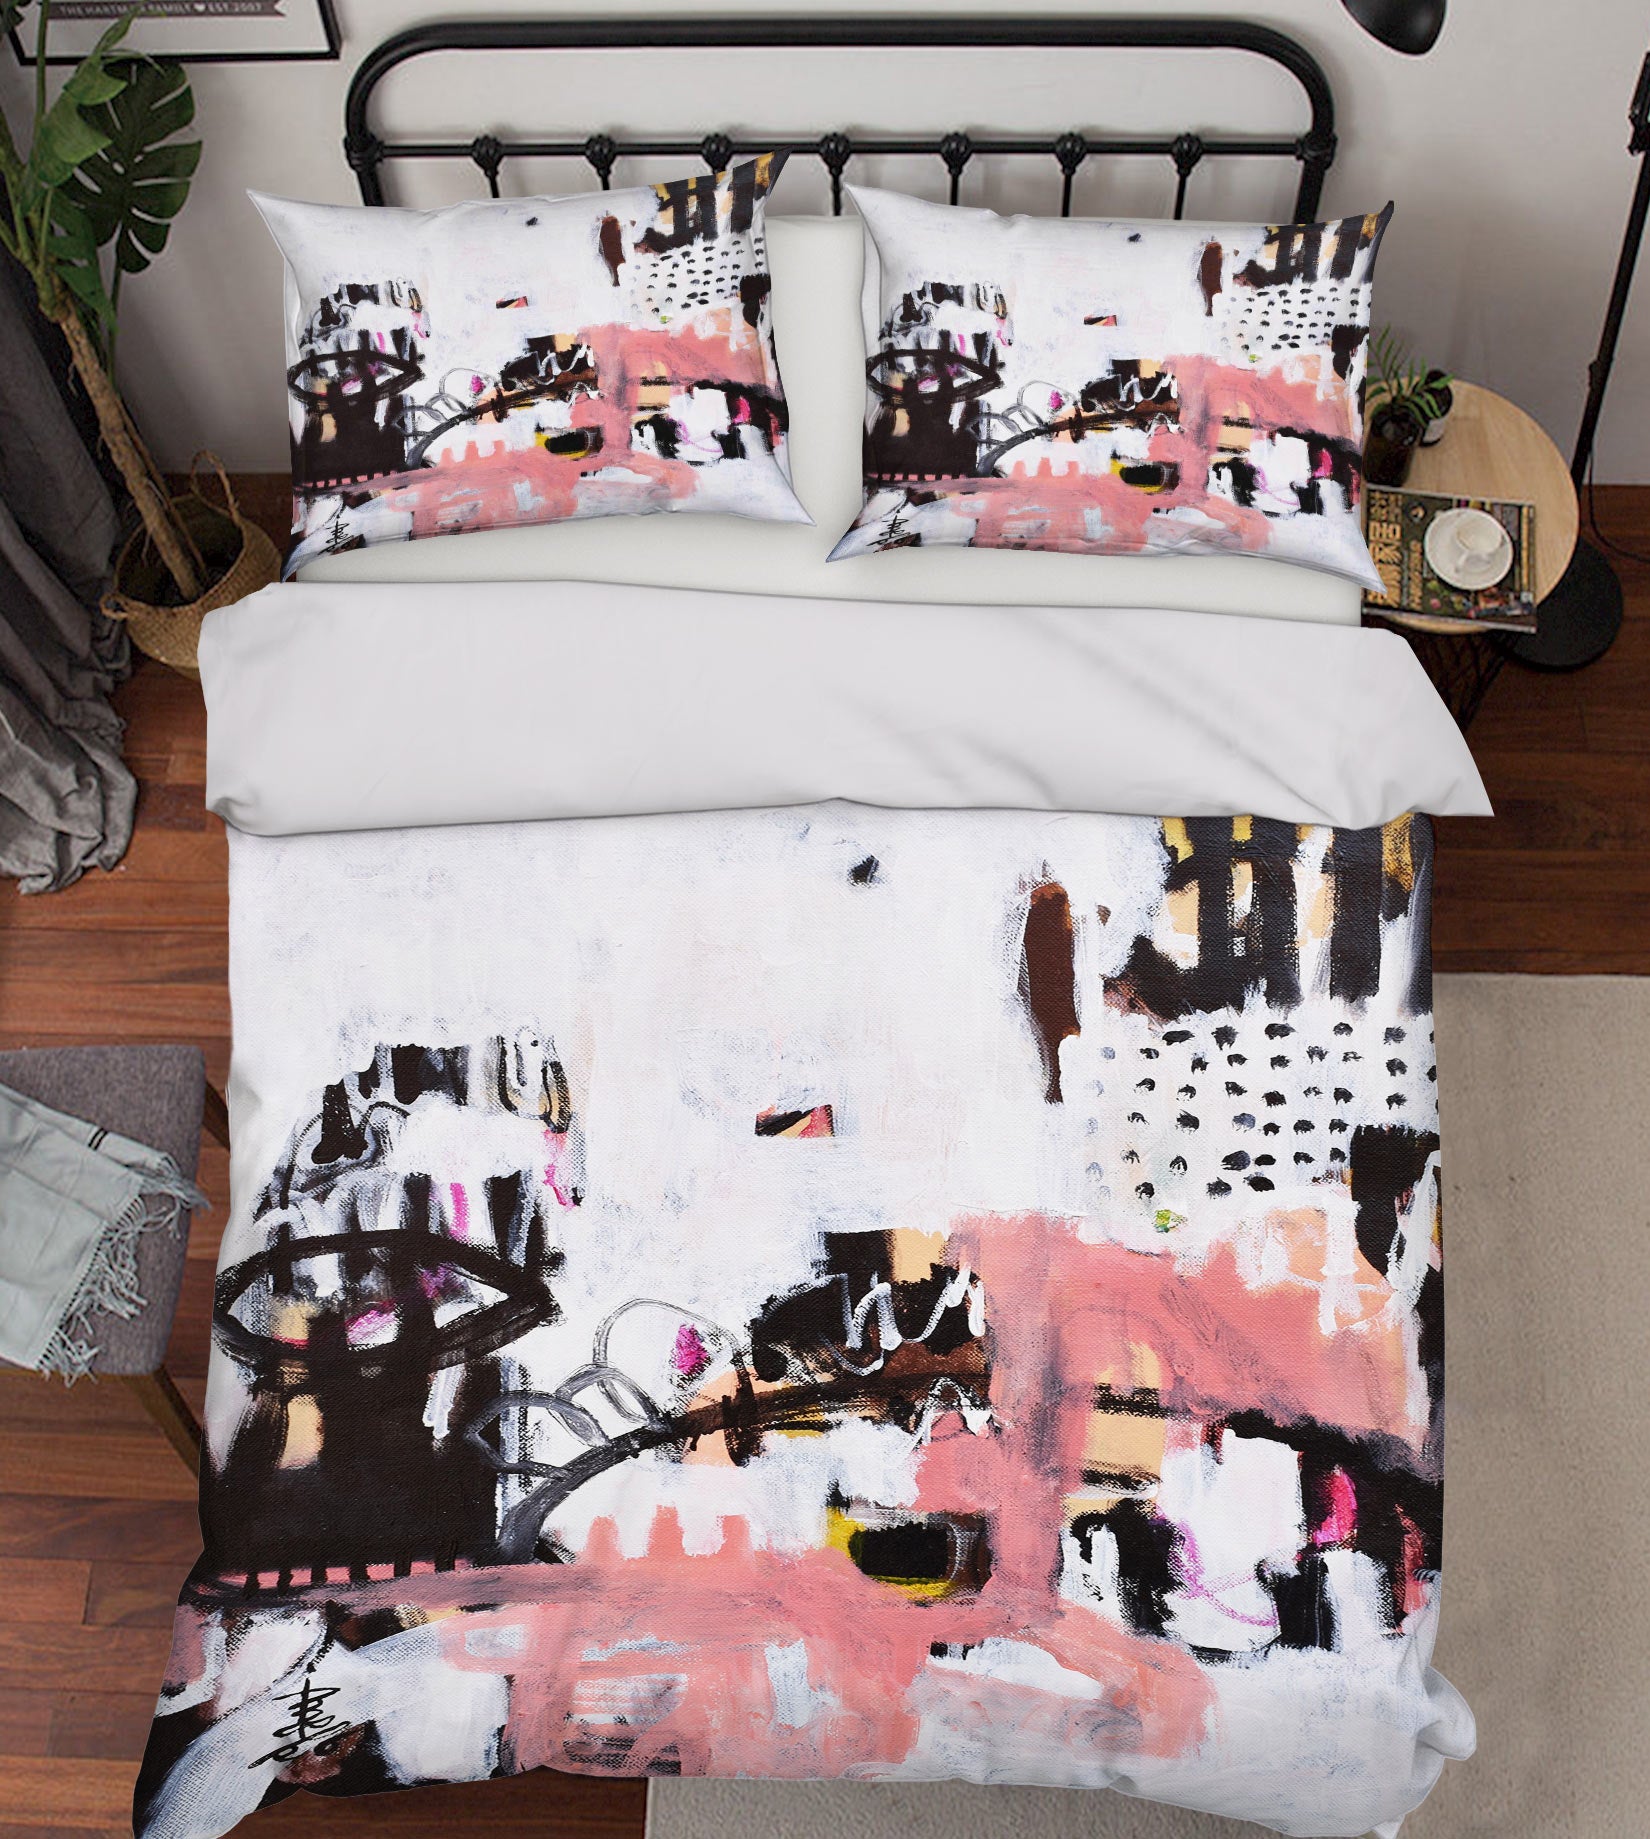 3D Graffiti Pink 1205 Misako Chida Bedding Bed Pillowcases Quilt Cover Duvet Cover